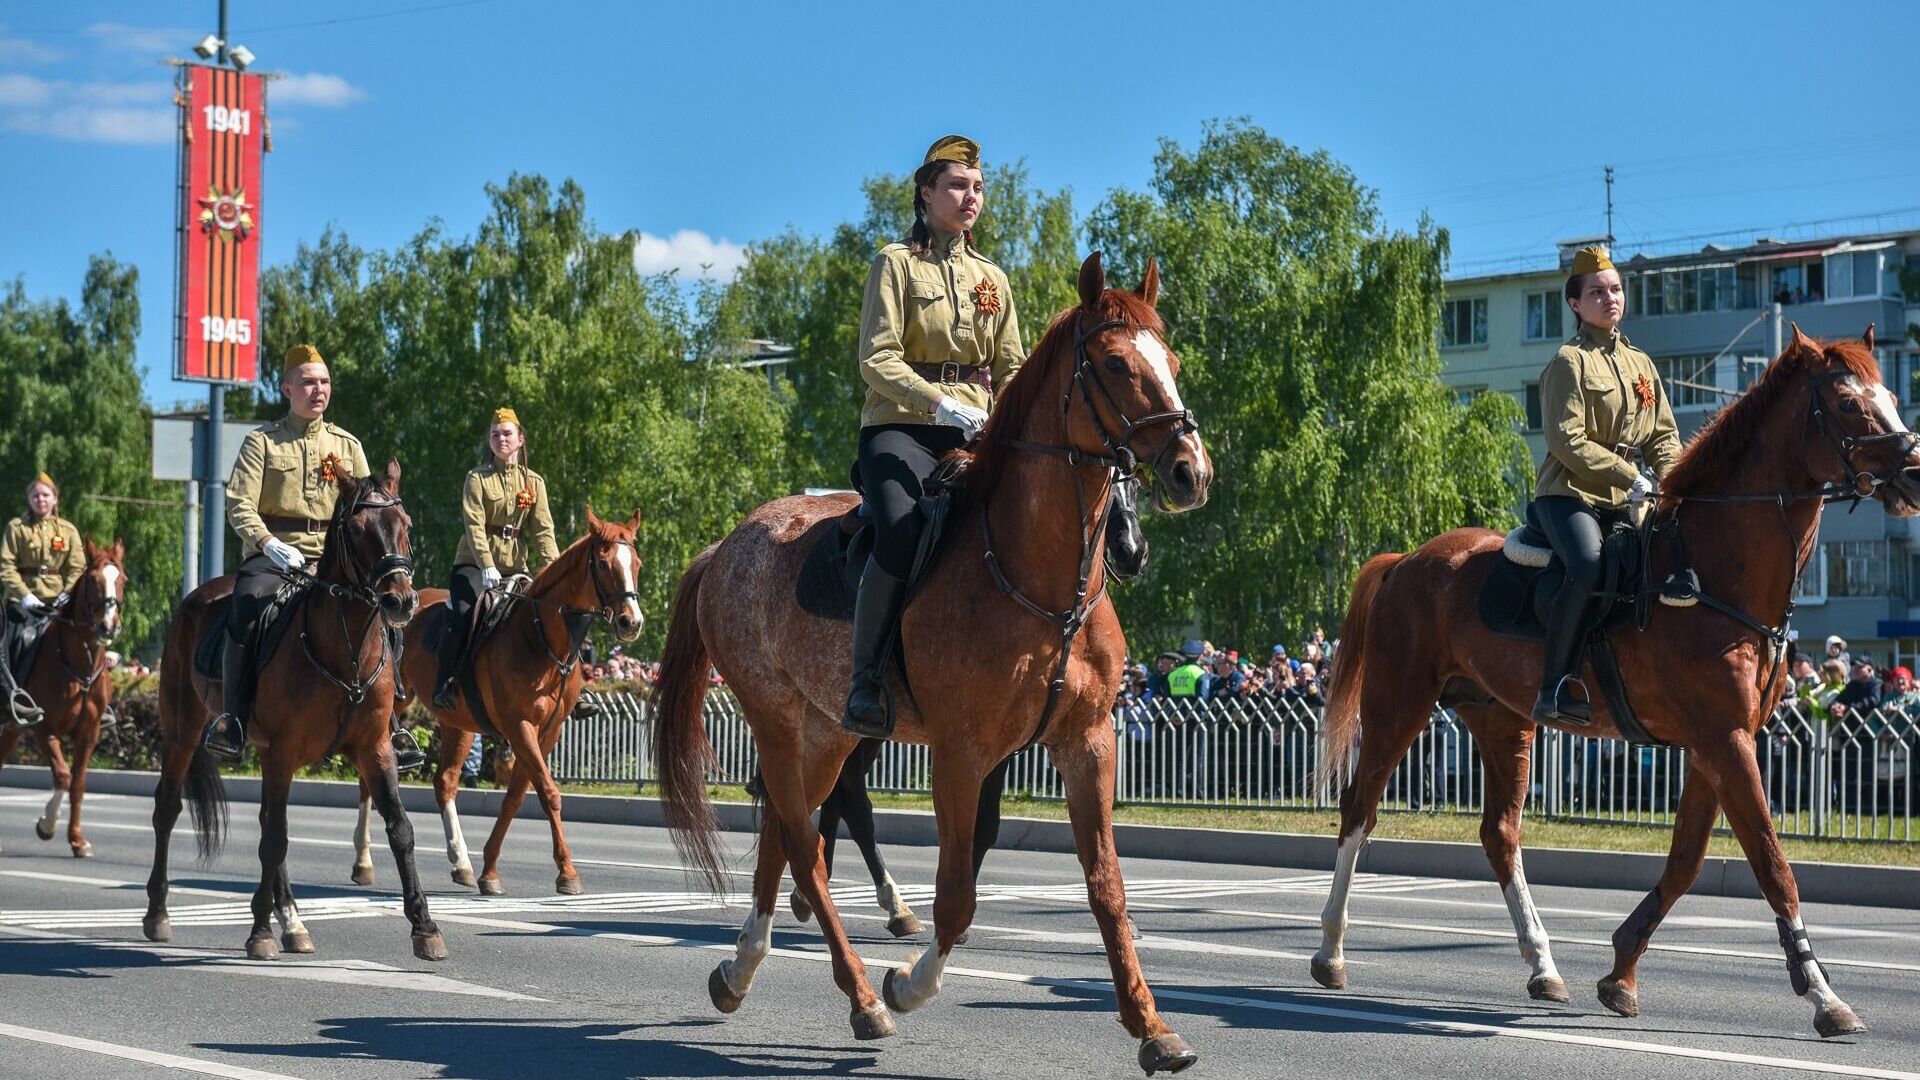 Владимир Соловьев оценил шествие конной кавалерии на параде в Челнах